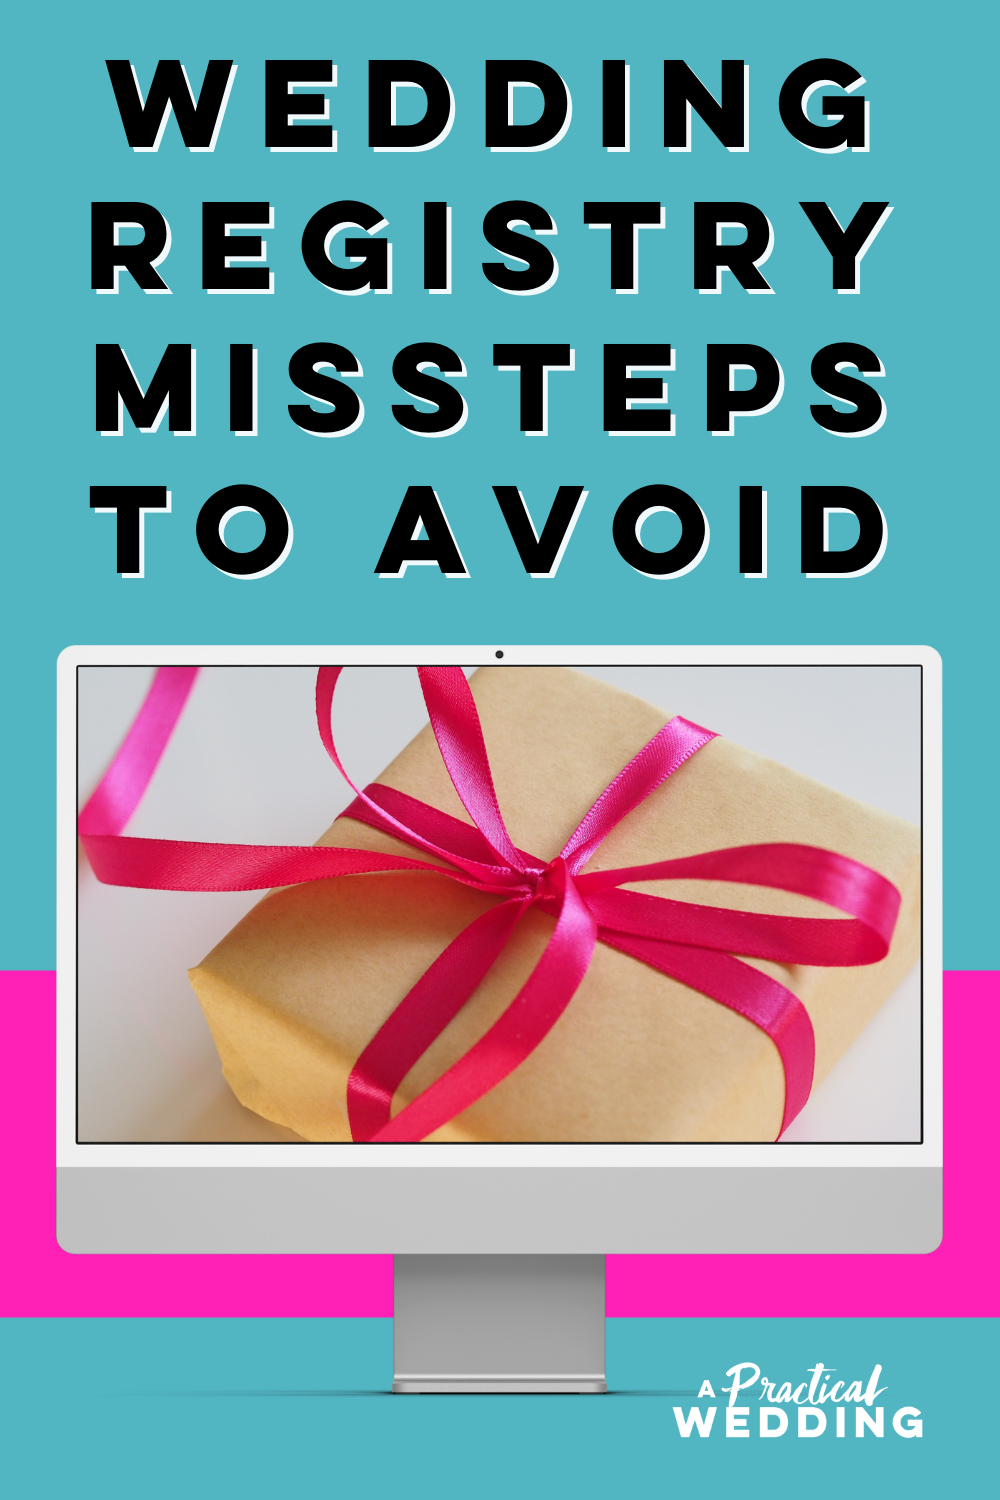 Wedding registry missteps to avoid - Những sai lầm trong đăng ký đám cưới cần tránh